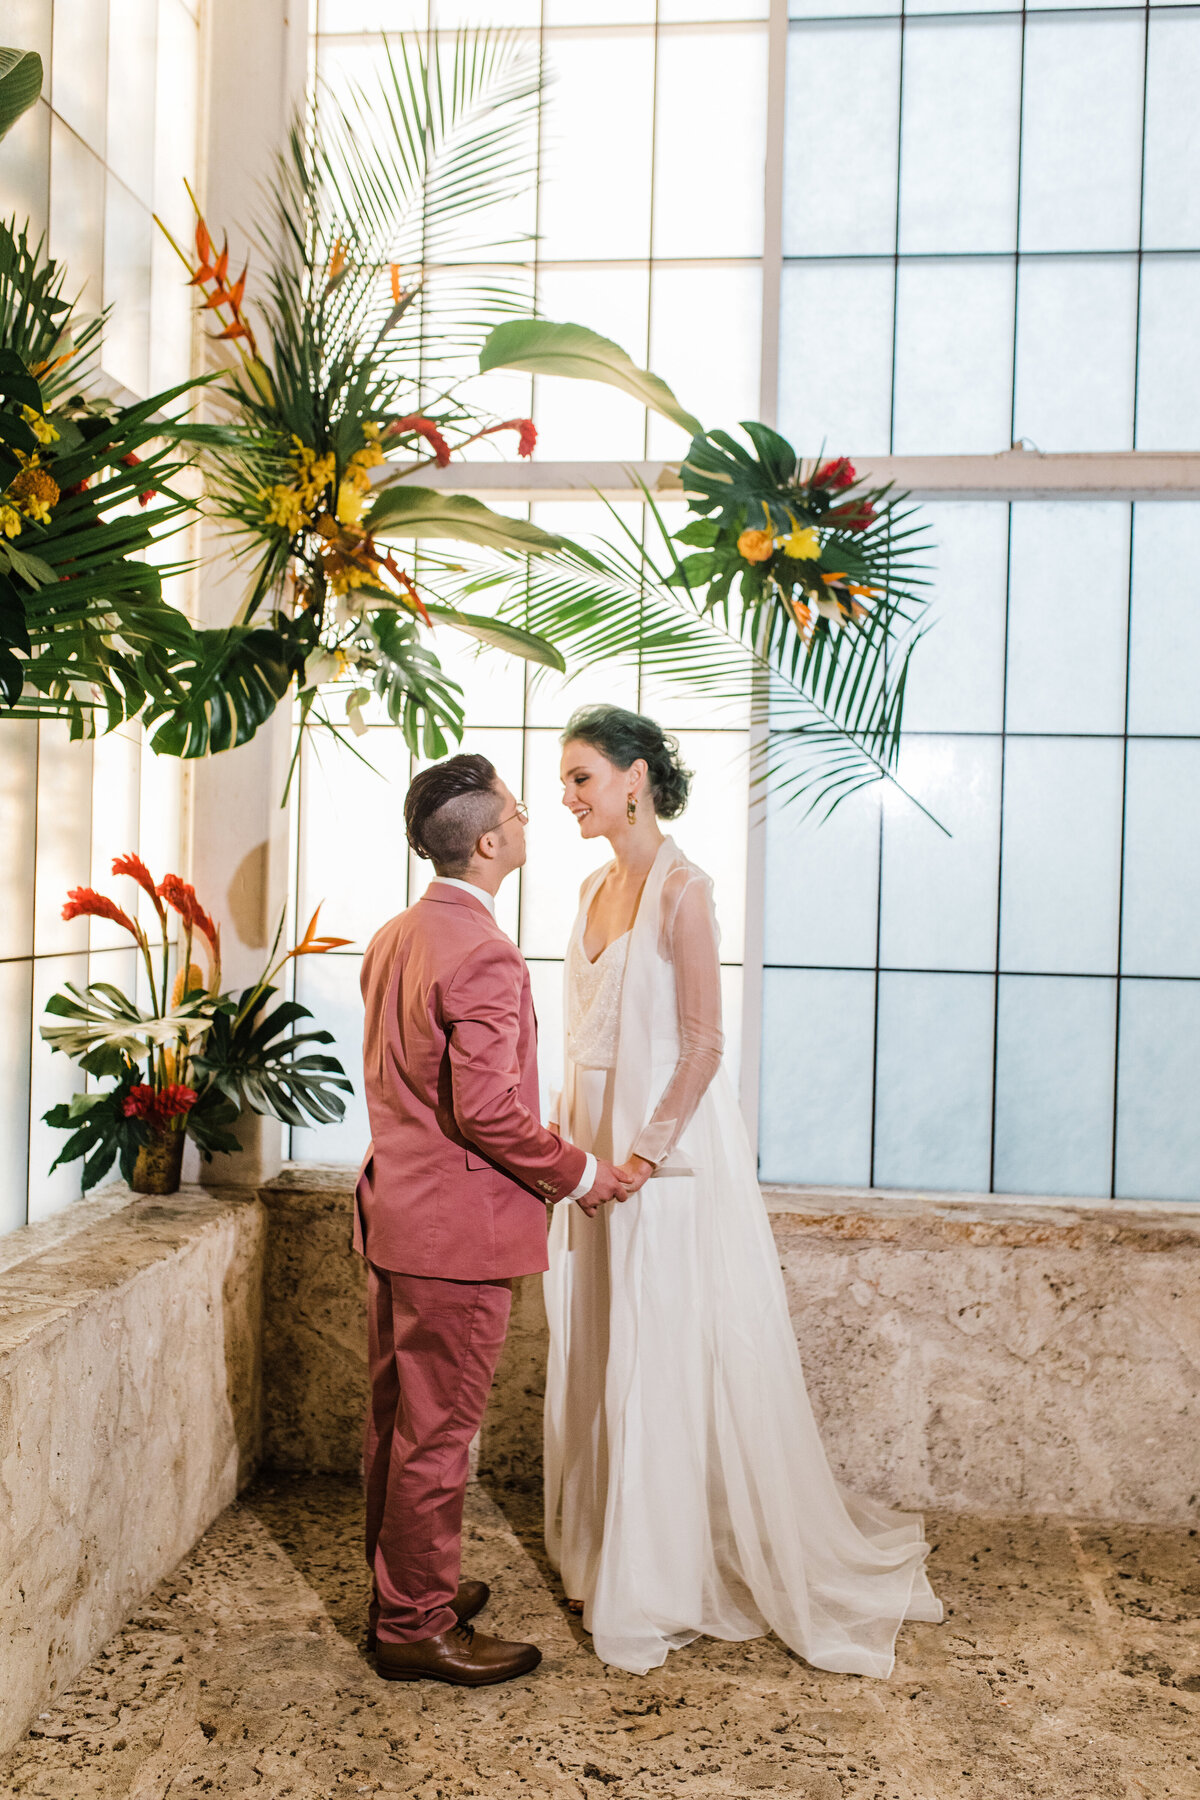 Dallas Aquarium Nimbus Events Wedding Planning Tropical Ceremony